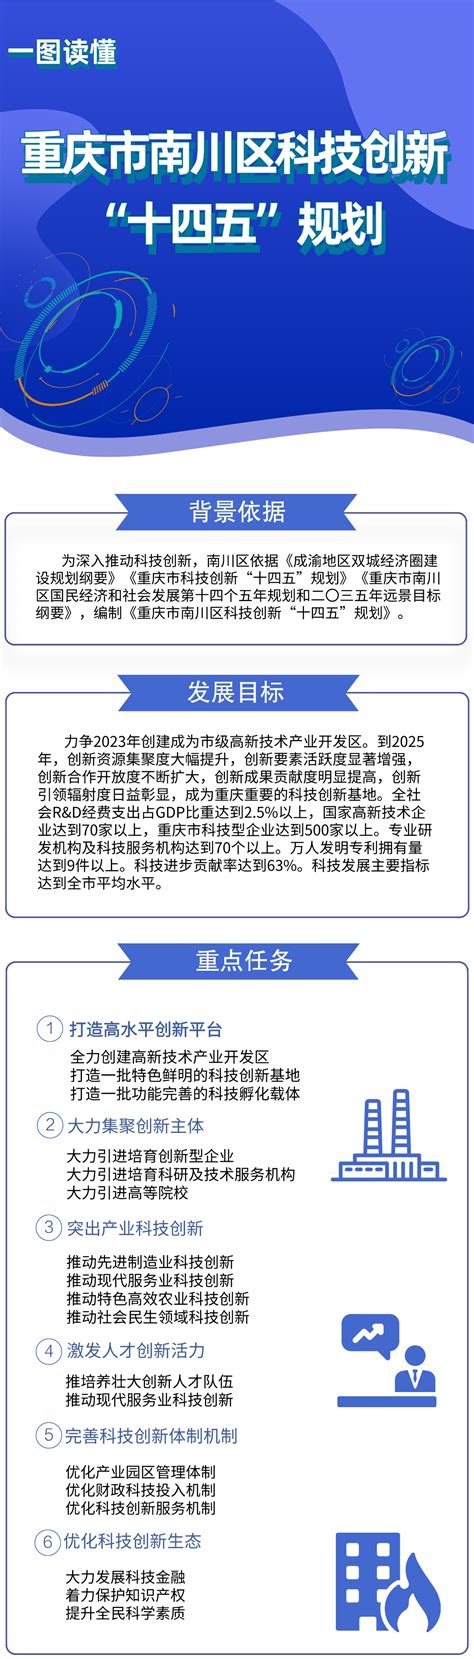 广东省科技创新“十四五”规划